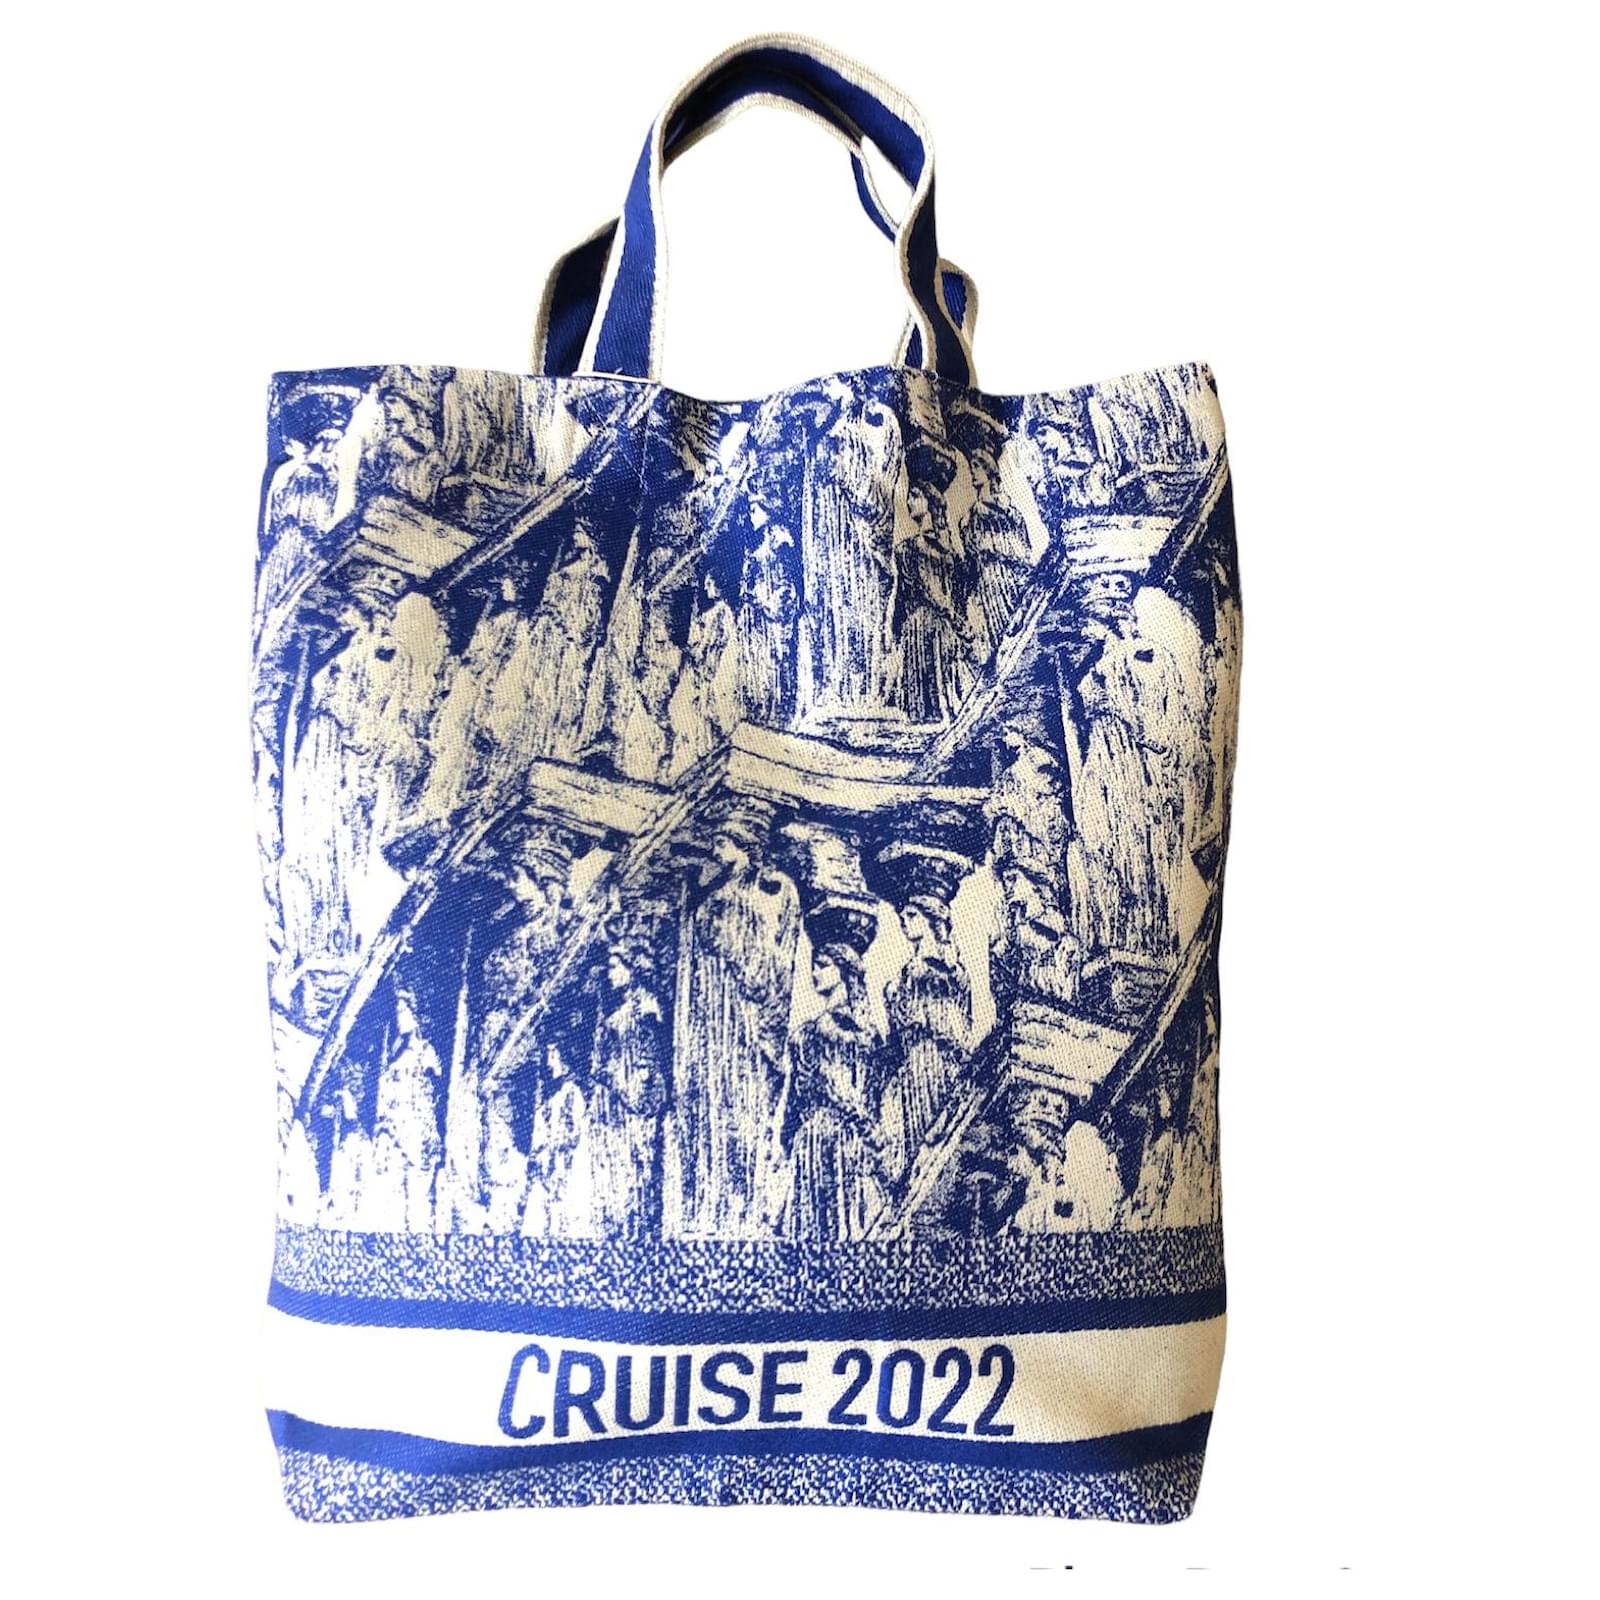 Sac cabas Dioriviera Cruise 2022 en toile bleu - Dior